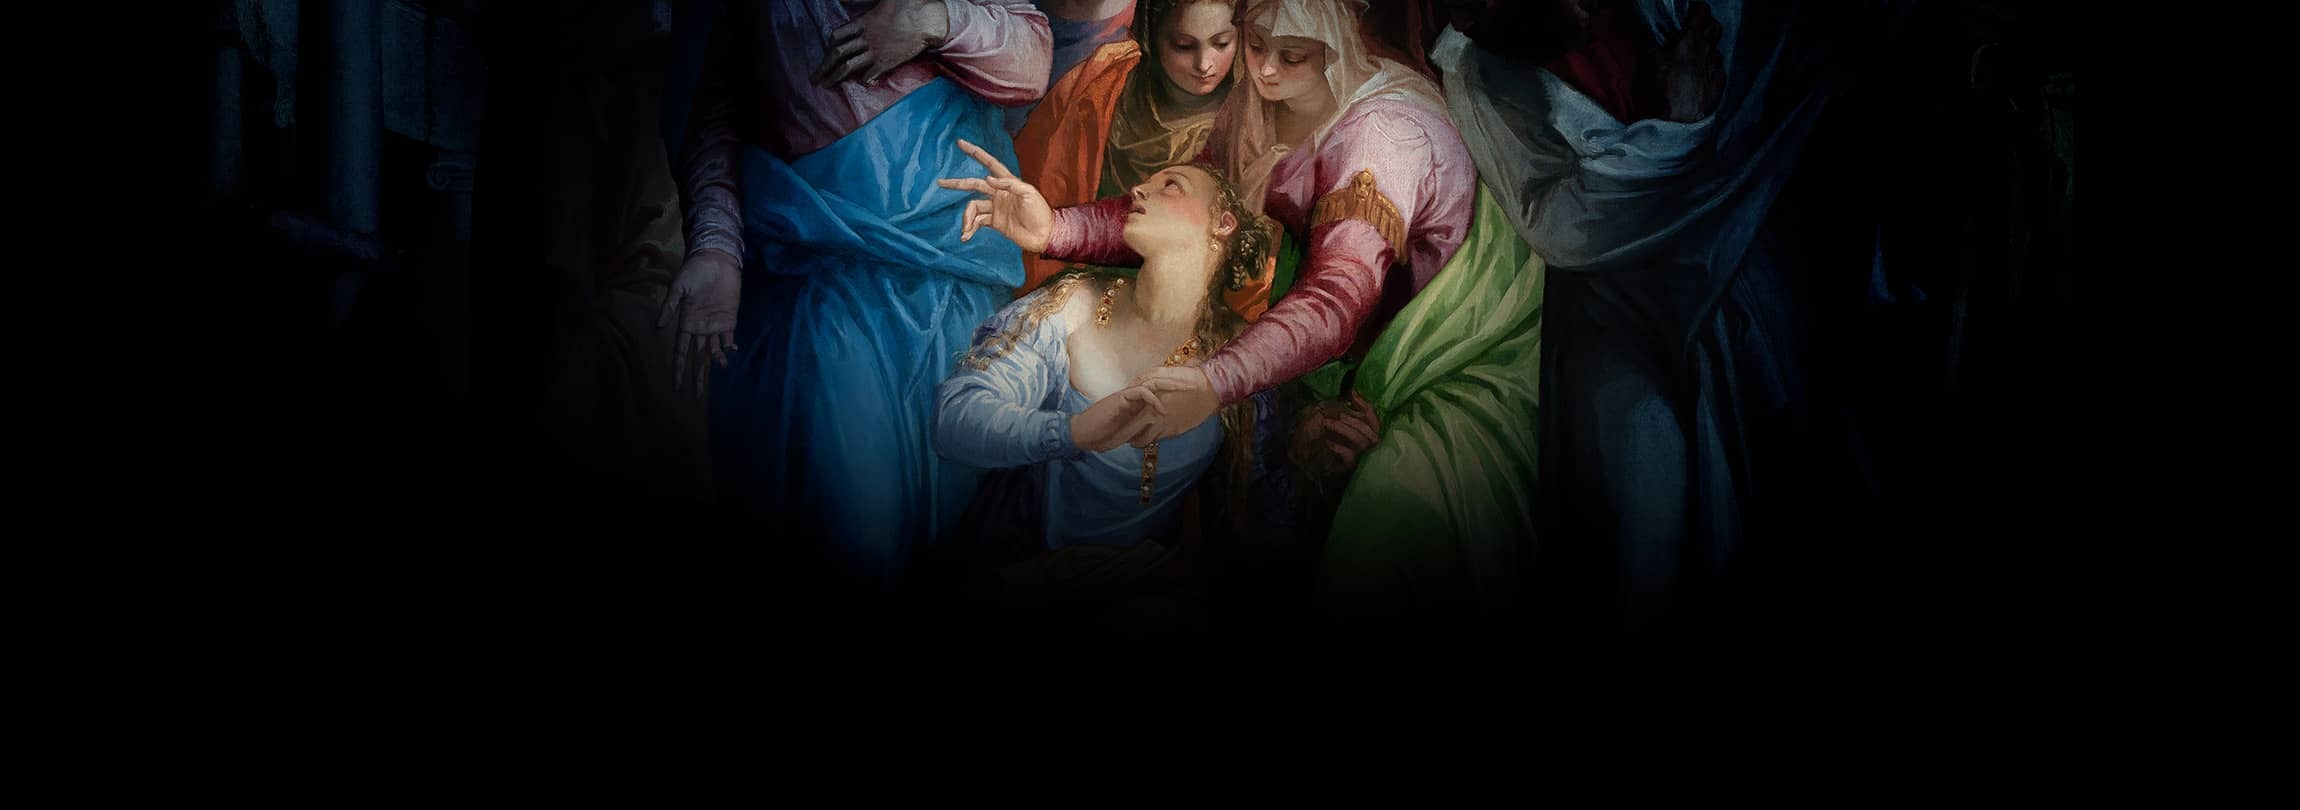 Três Marias diferentes ou Santa Maria Madalena?